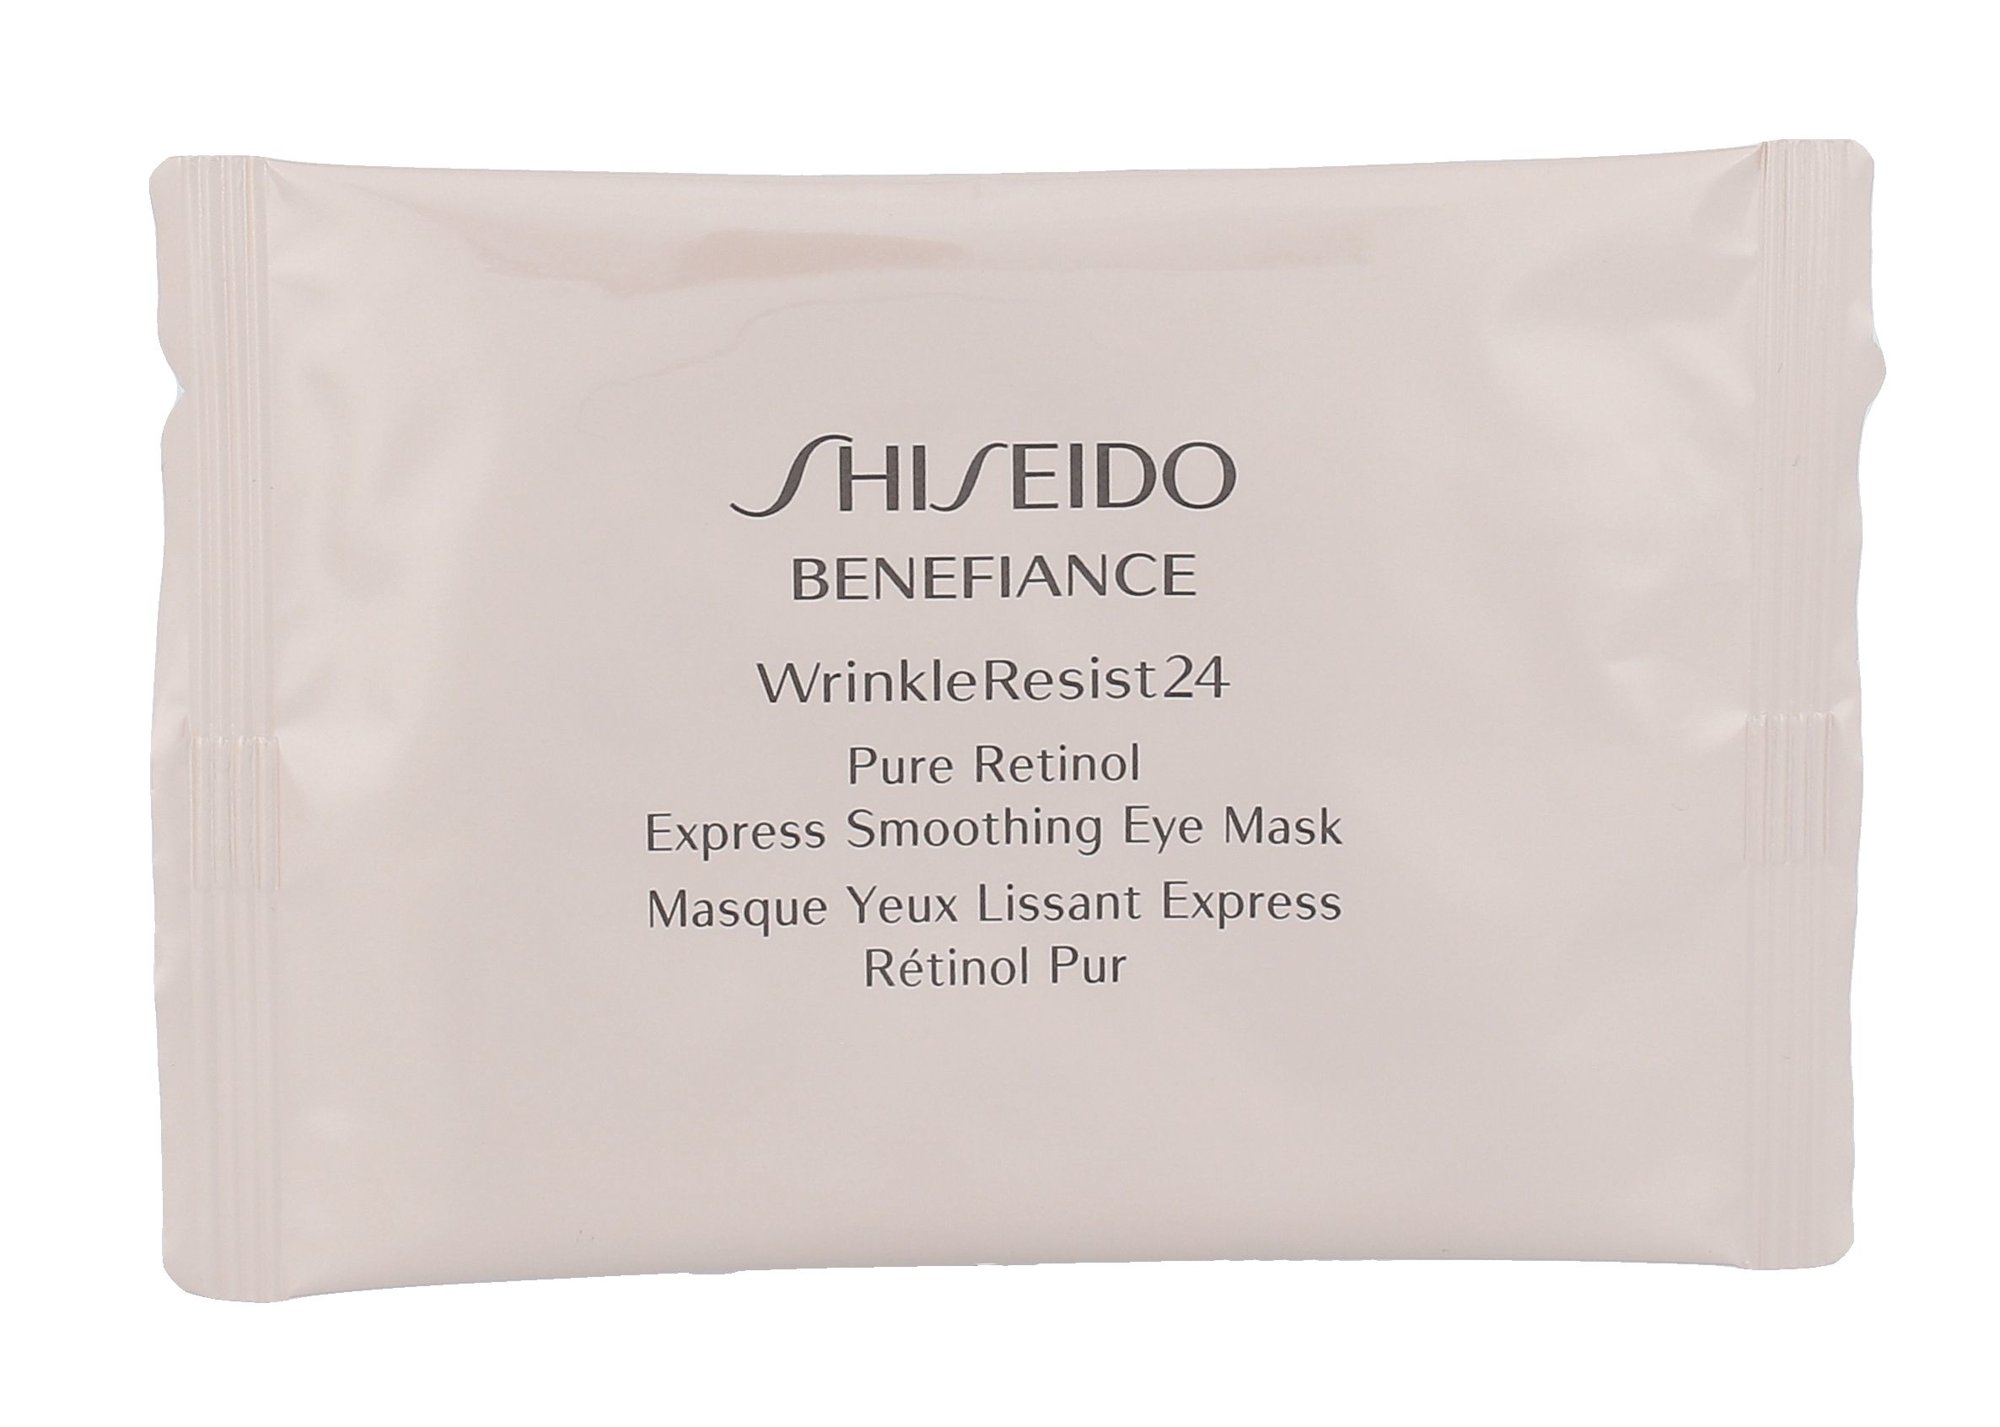 Shiseido Benefiance Wrinkle Resist 24 Pure Retinol Eye Mask